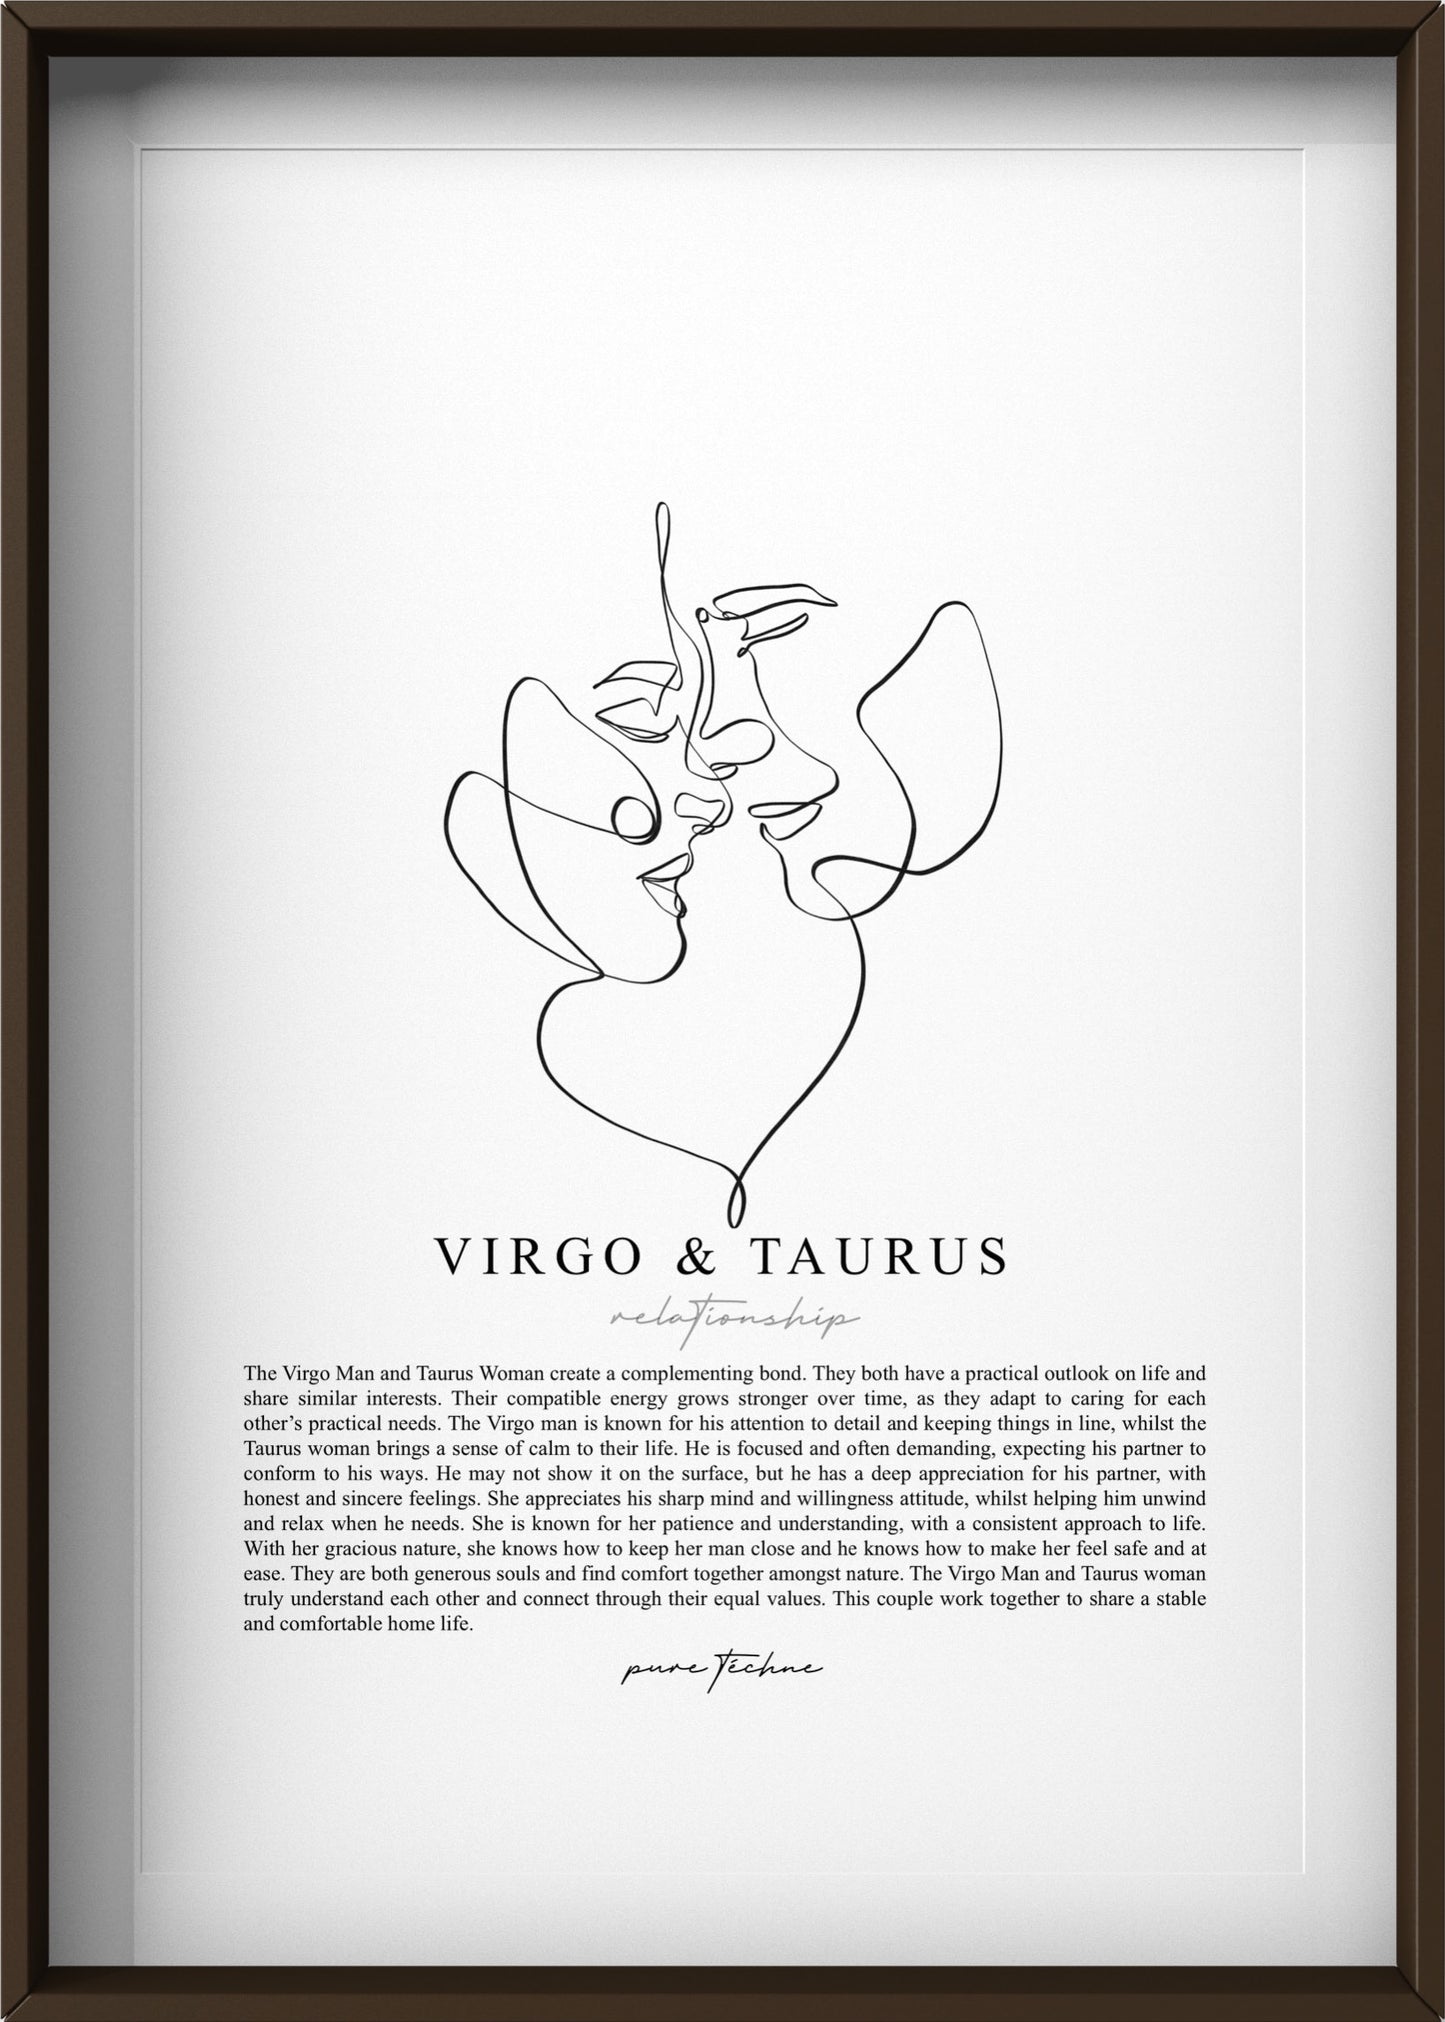 Virgo Man & Taurus Woman